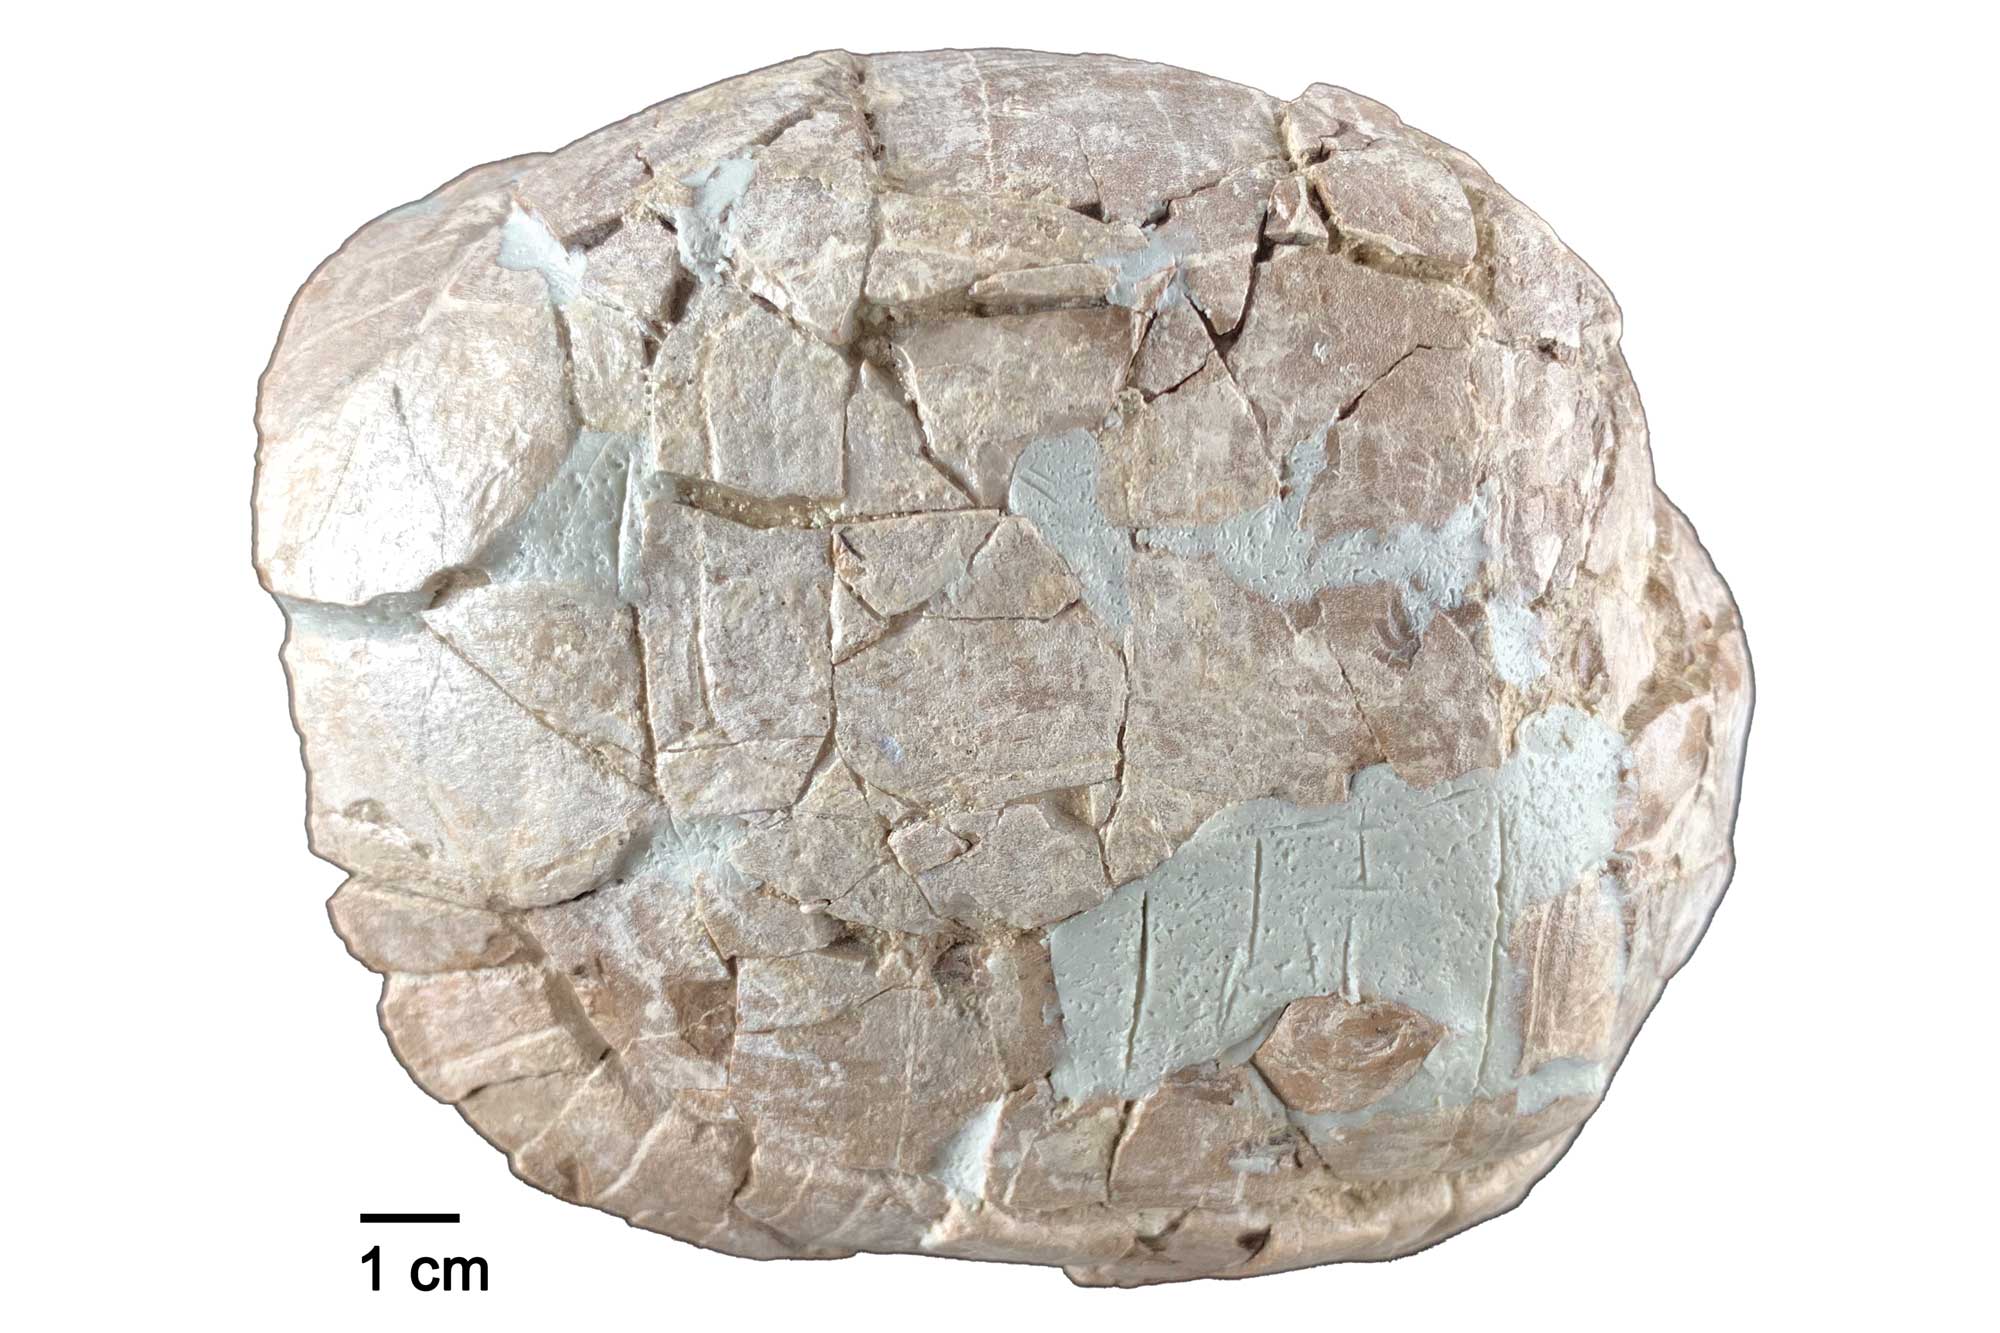 Photograph of an Eocene fossil tortoise shell from Nebraska.